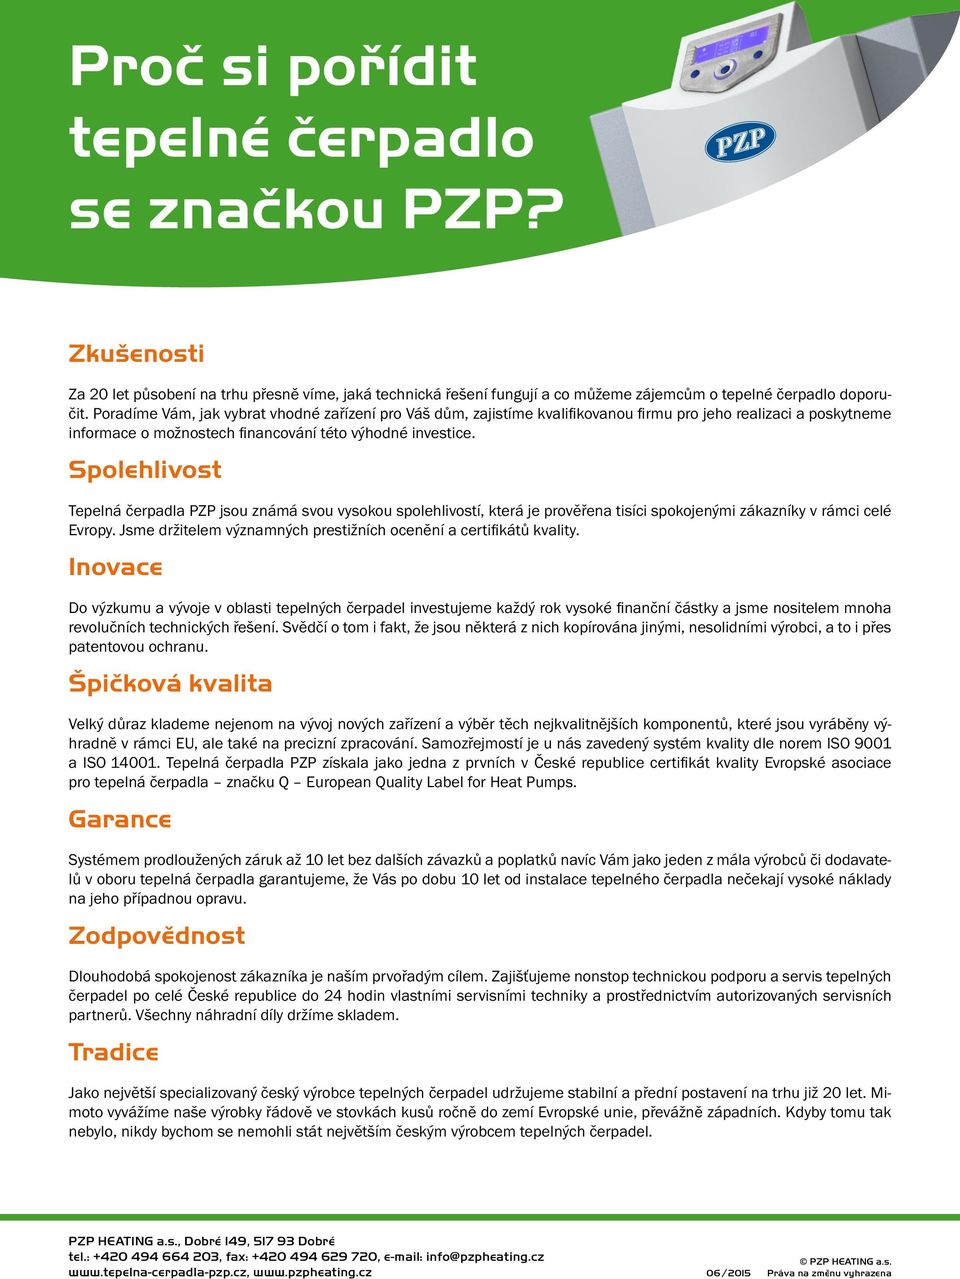 Spolehlivost Tepelná čerpadla PZP jsou známá svou vysokou spolehlivostí, která je prověřena tisíci spokojenými zákazníky v rámci celé Evropy.